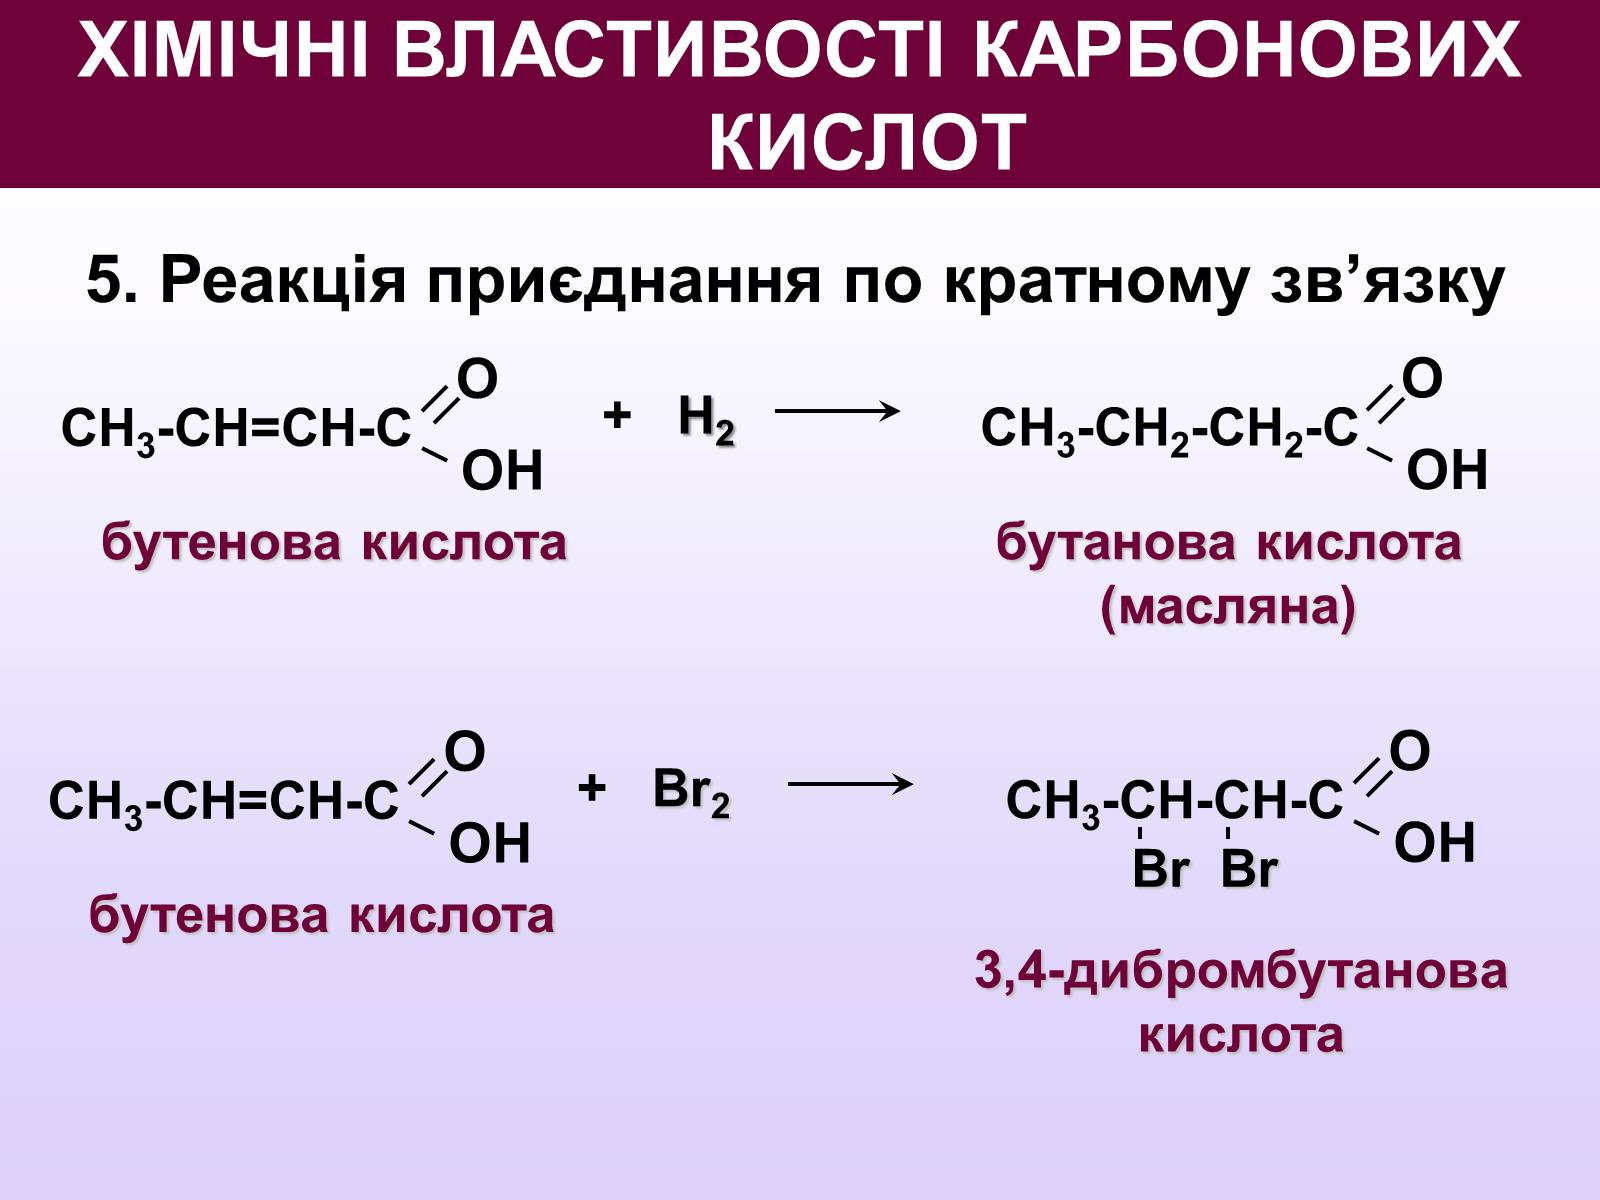 Изомерия бутановой кислоты. Масляная бутановая кислота. Реакции с бутановой кислотой. Масляная кислота и бром. Бутановая кислота реакции.